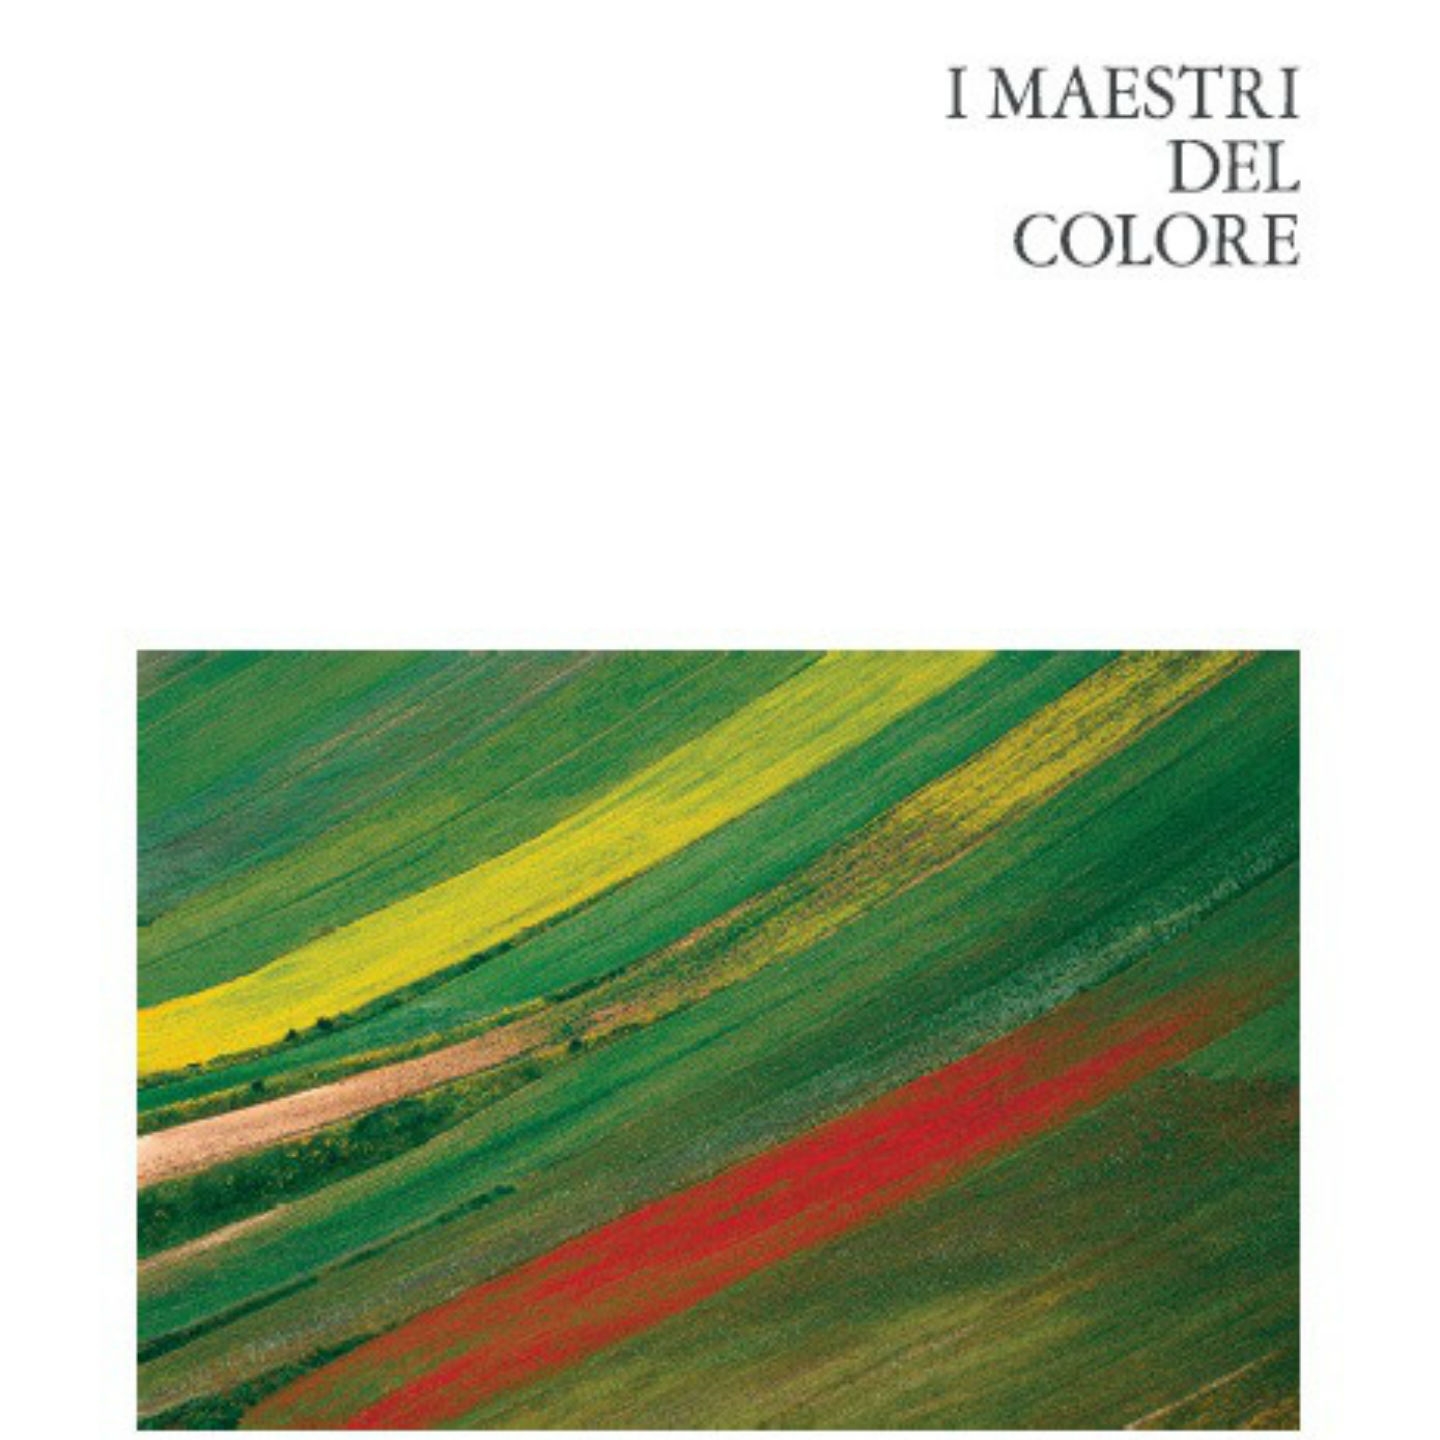 I maestri del colore, Vol. 2